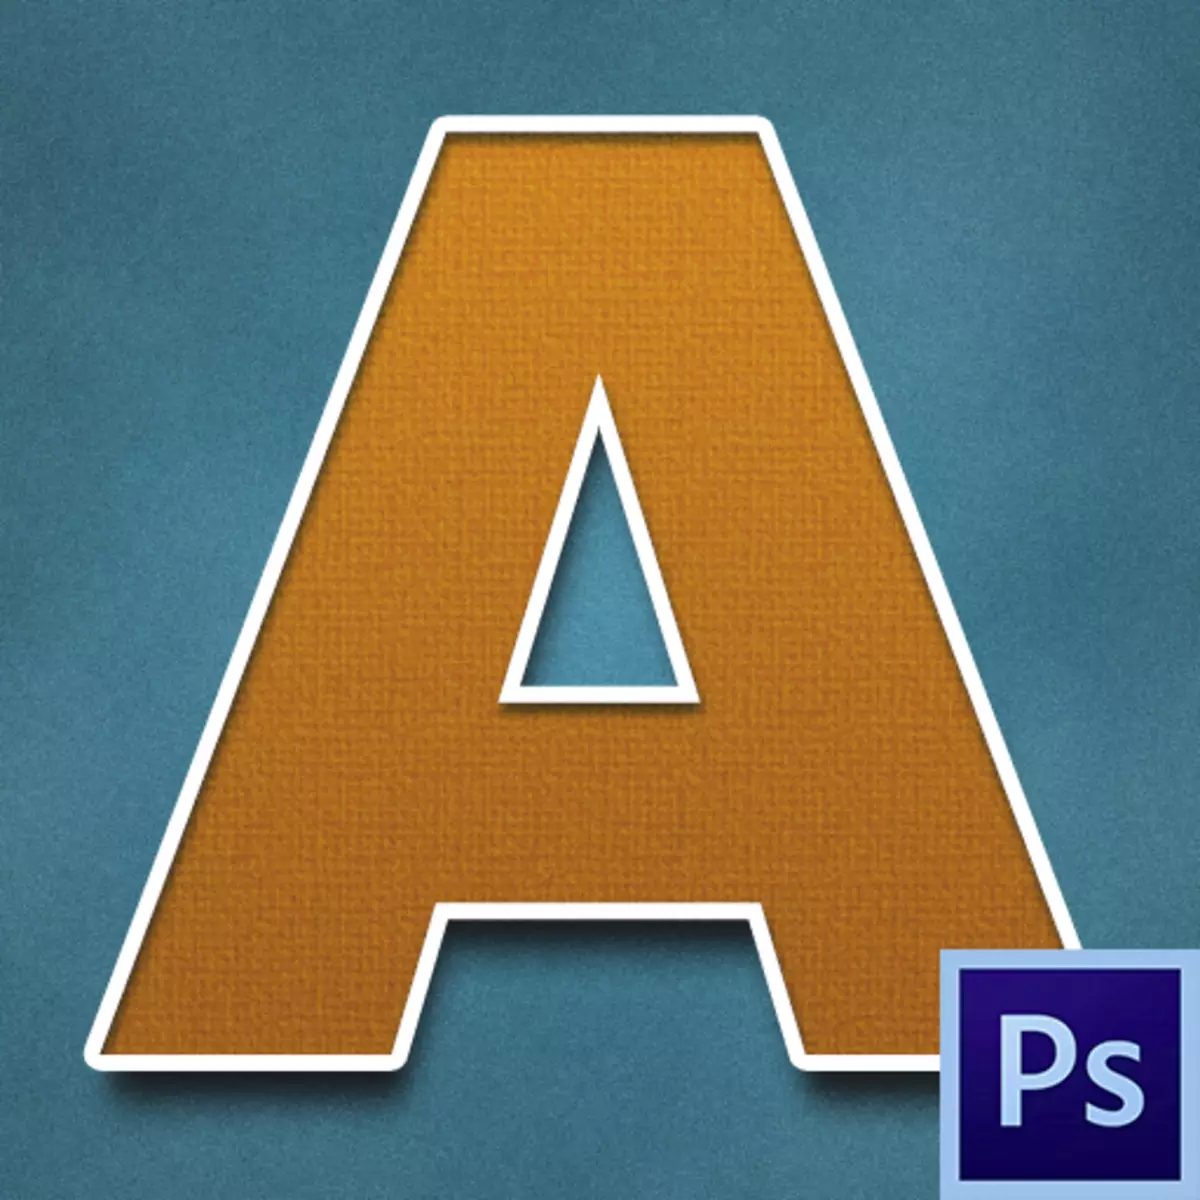 Hoe maak je een mooi lettertype in Photoshop